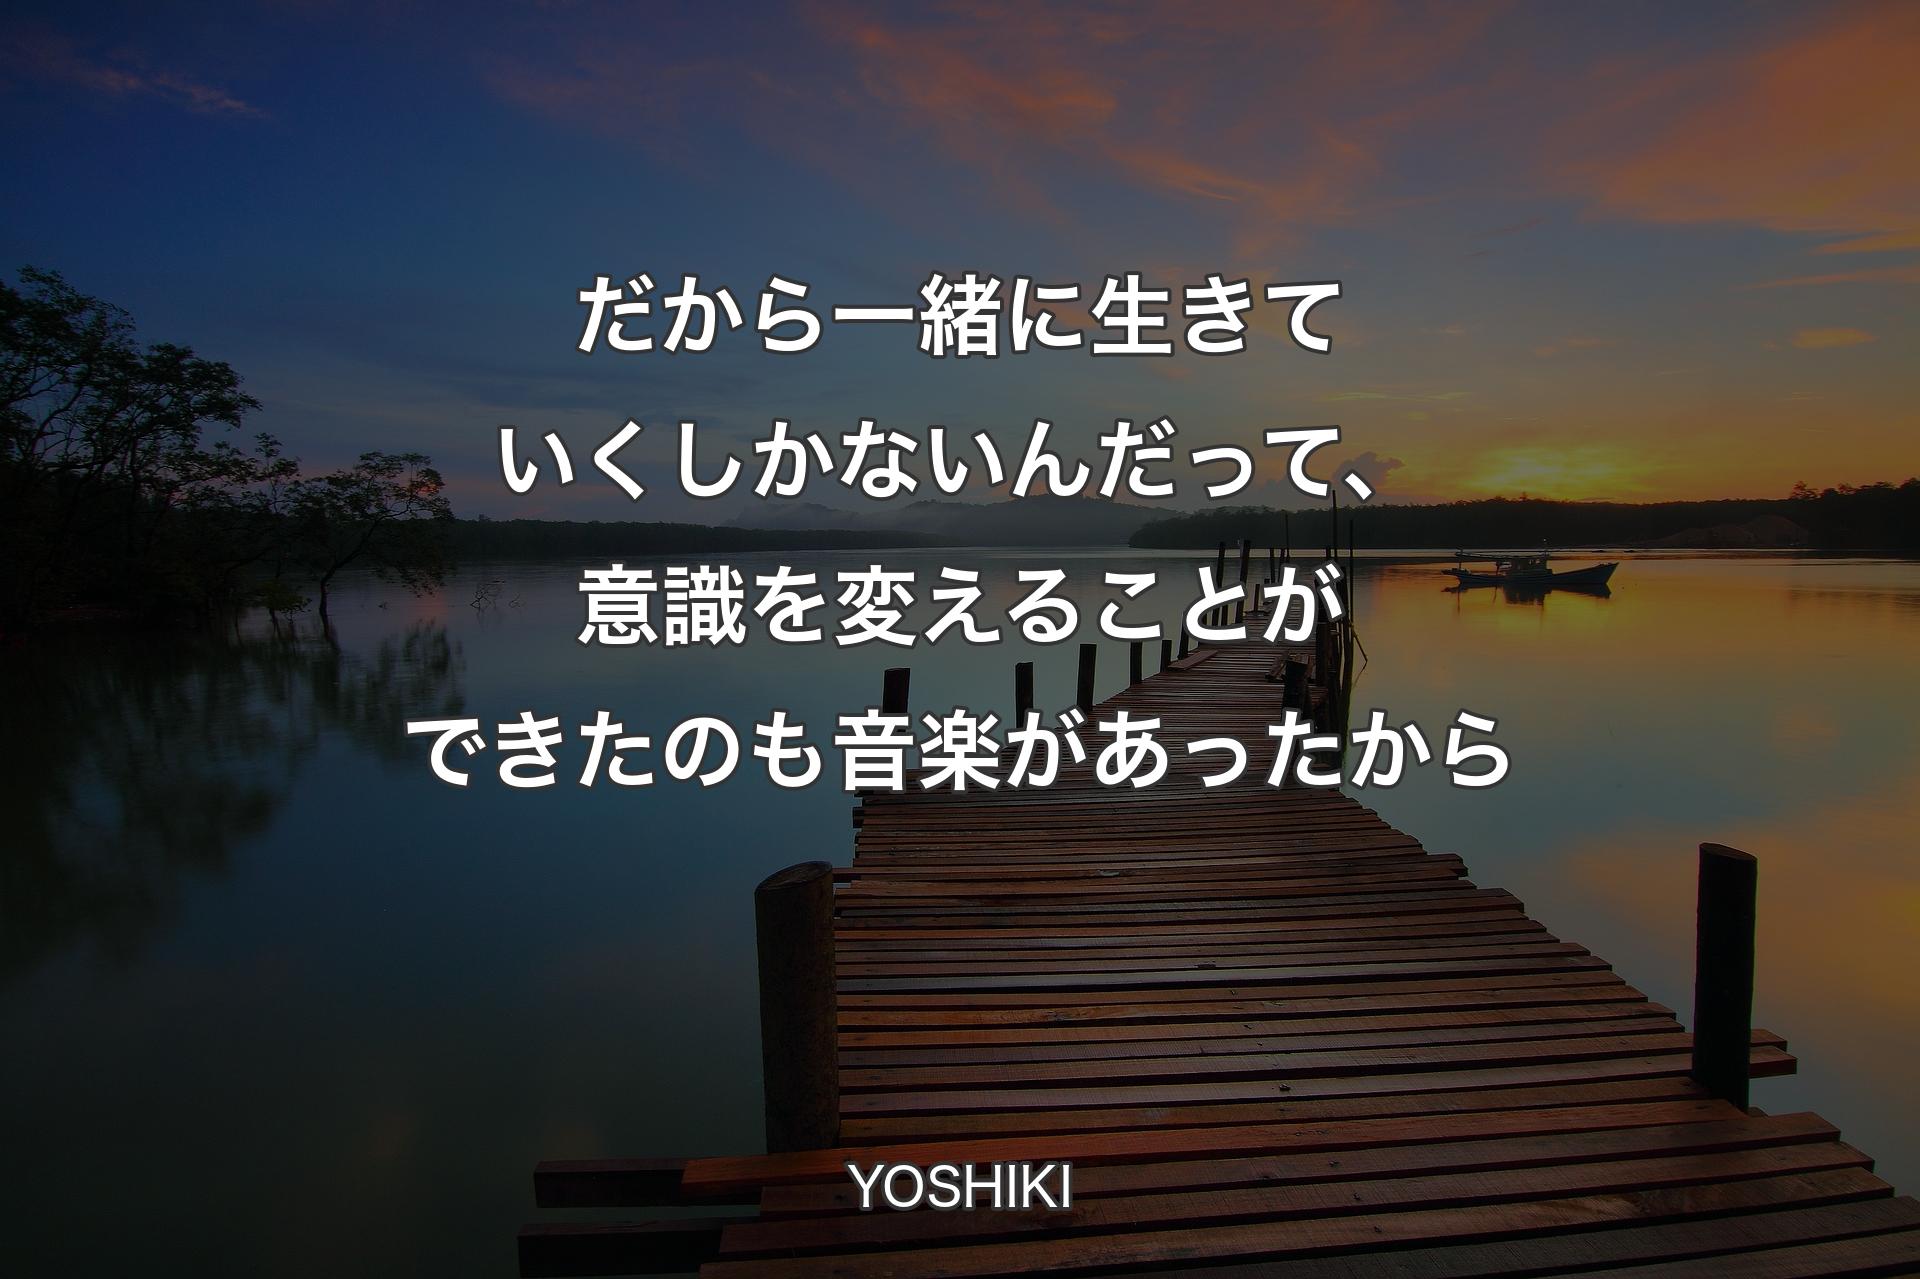 【背景3】だから一緒に生きていくしかないんだって、意識を変えることができたのも�音楽があったから - YOSHIKI